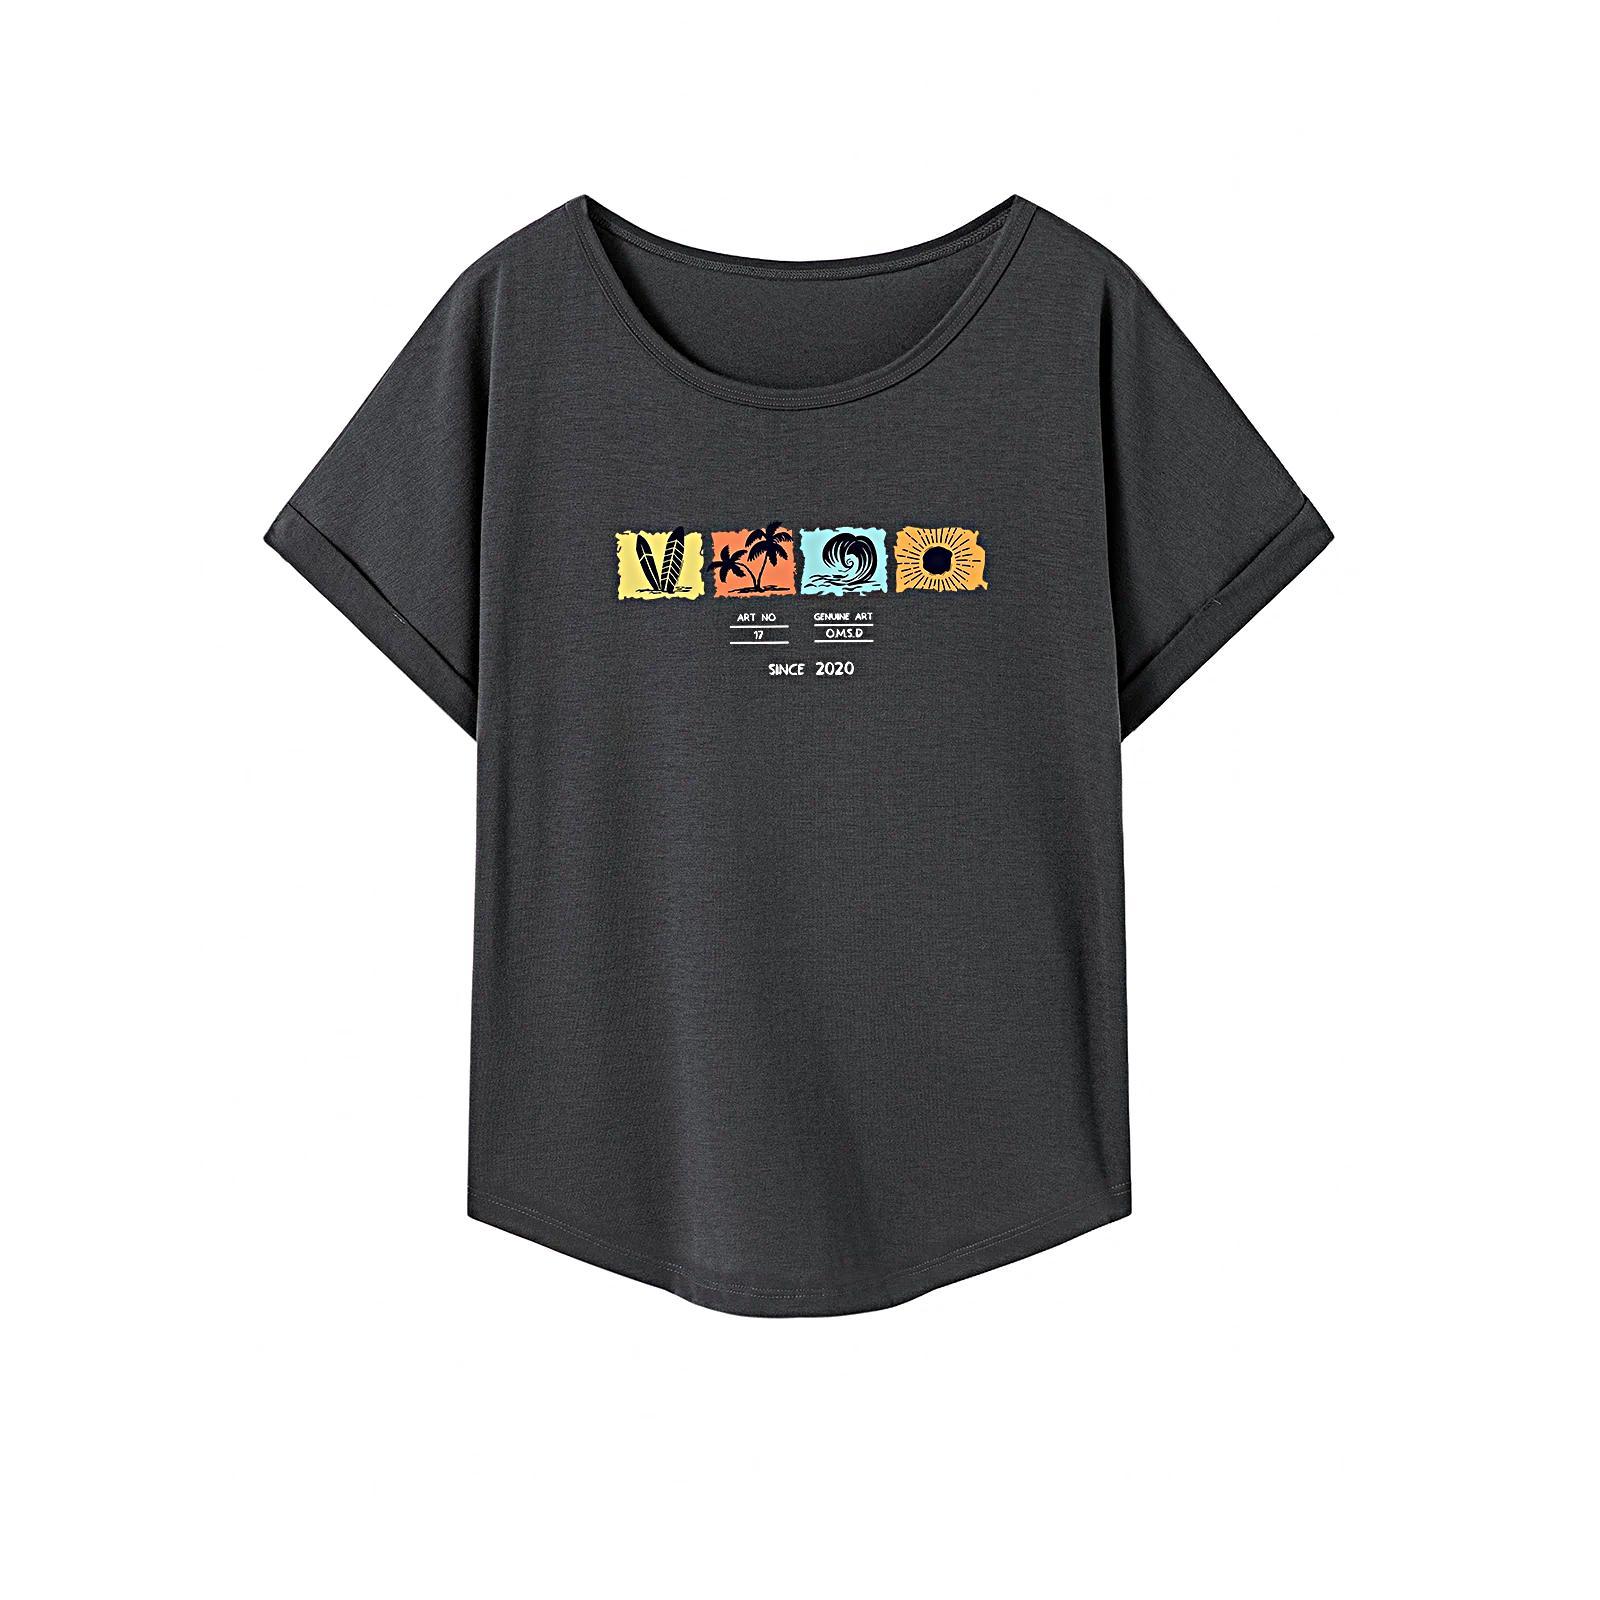 T Shirt for Women Summer Lightweight Crew Neck Shirt for Beach Sports Office S